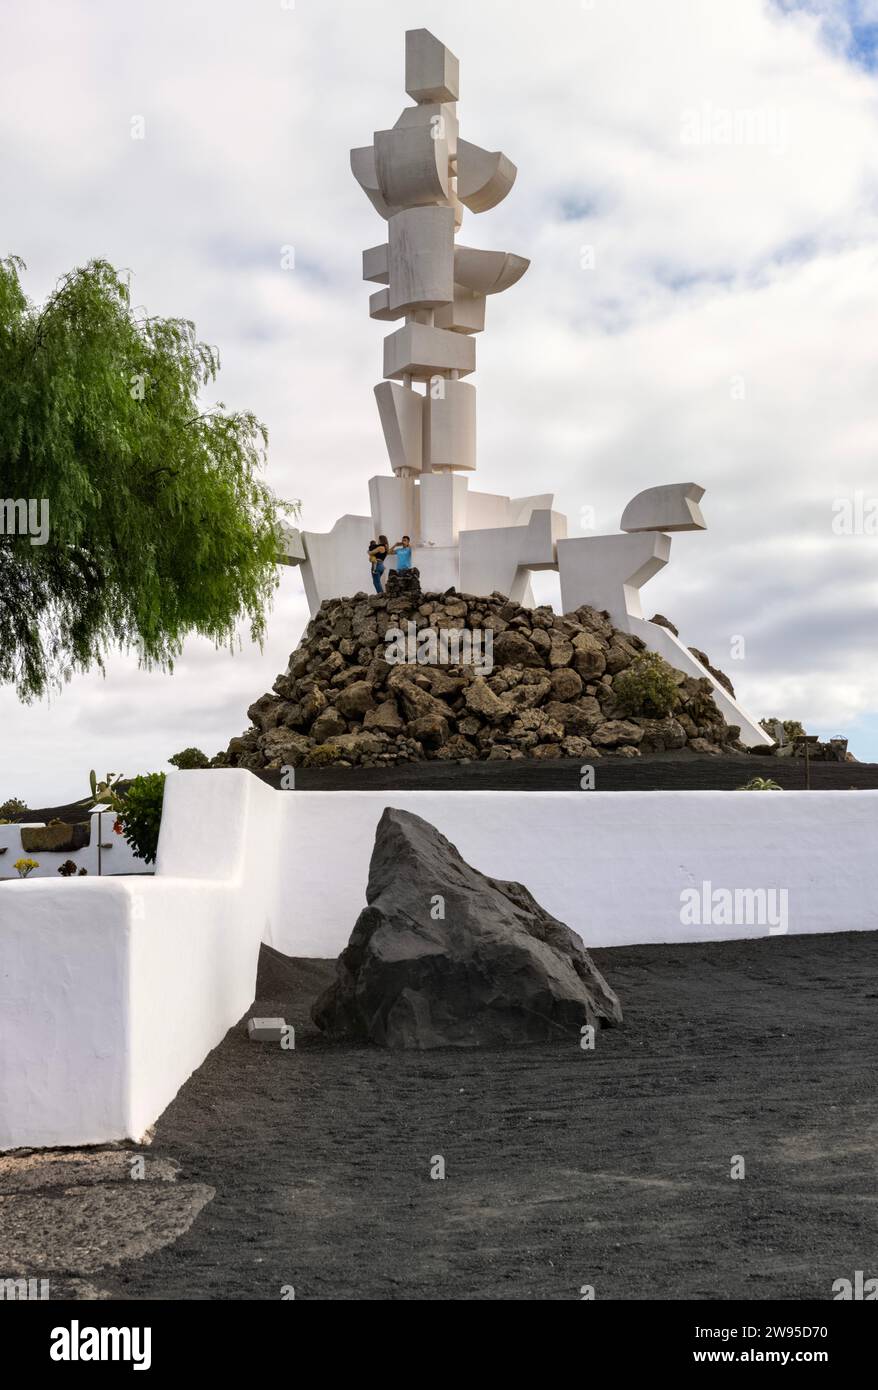 Monument à la fertilité de Cesar Manrique, San Bartolomé, Lanzarote, Îles Canaries, Espagne Banque D'Images